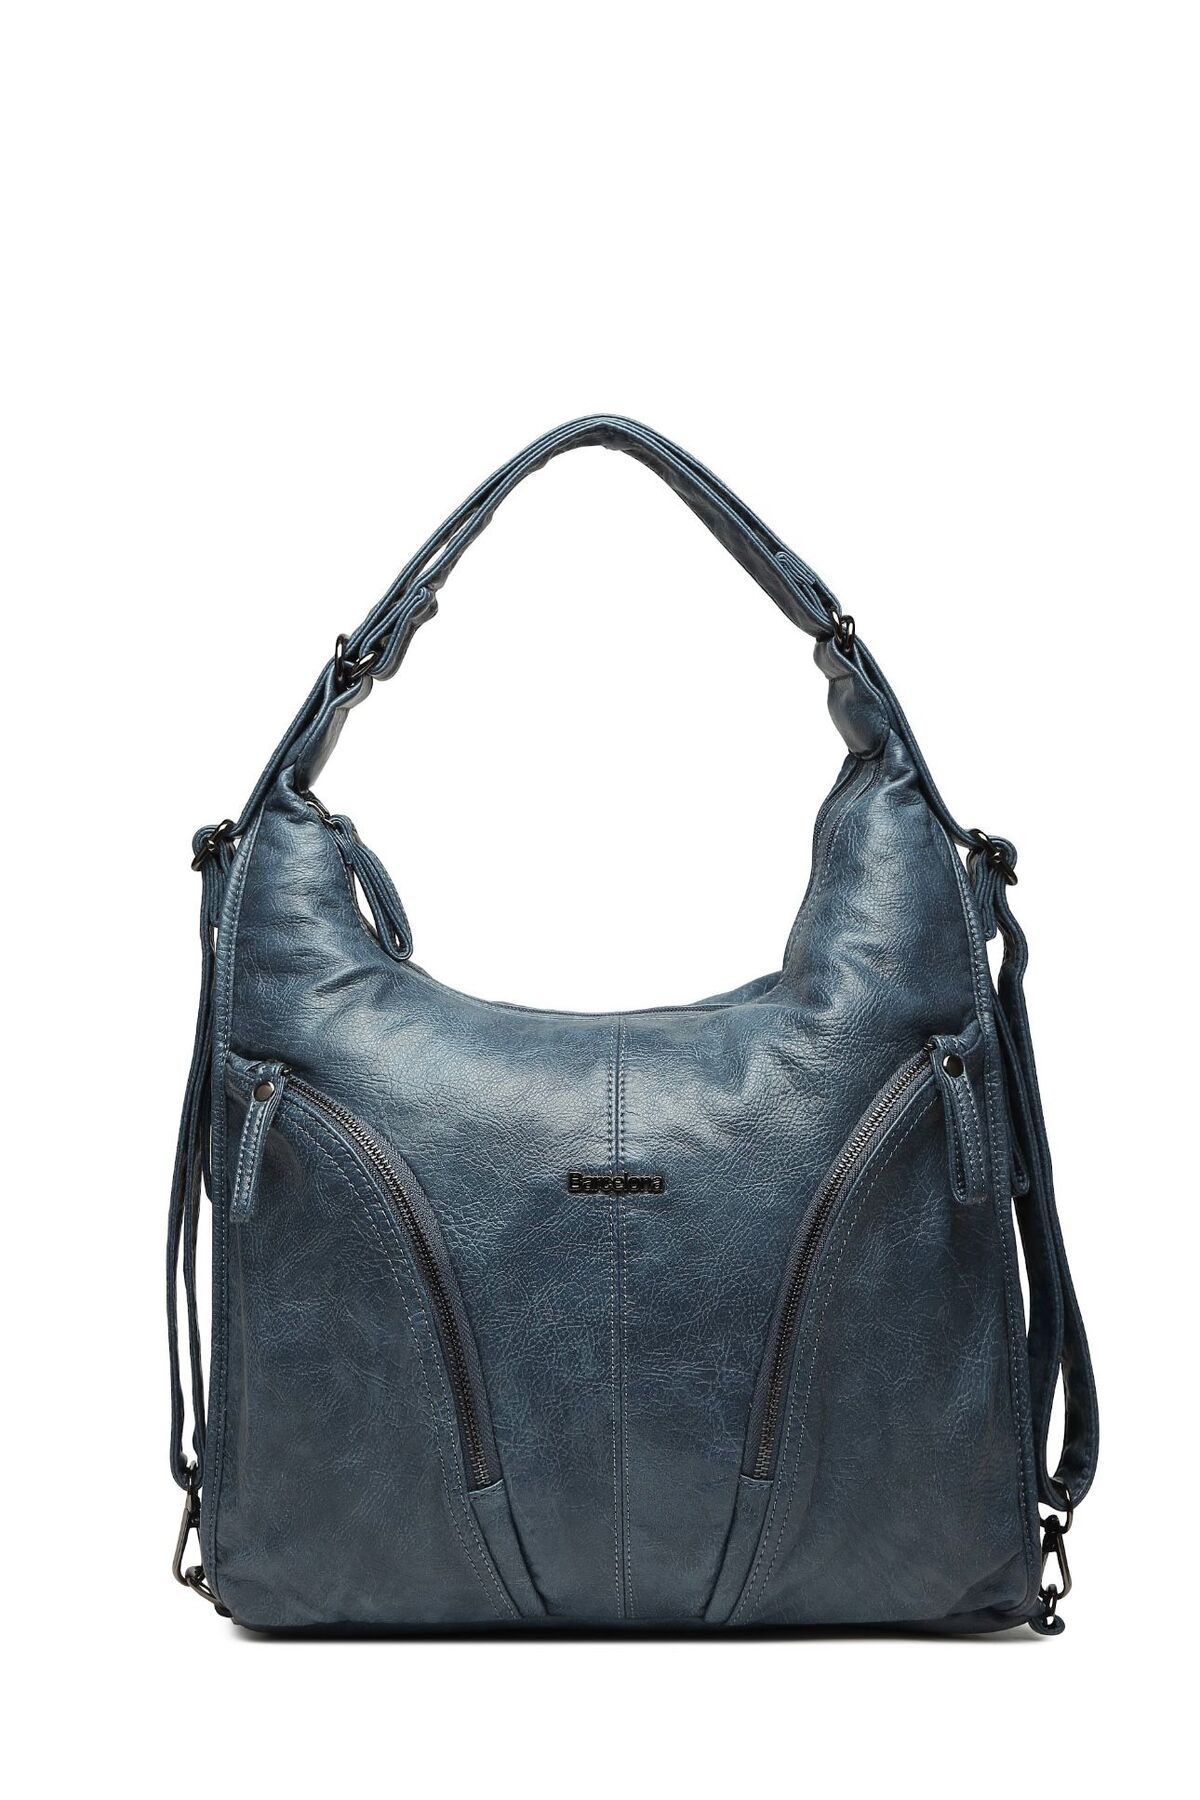 21K Smart Bags Barcelona ithal Yıkama Deri Hem Sırt Hem Omuz Askılı Kadın Çantası-1859